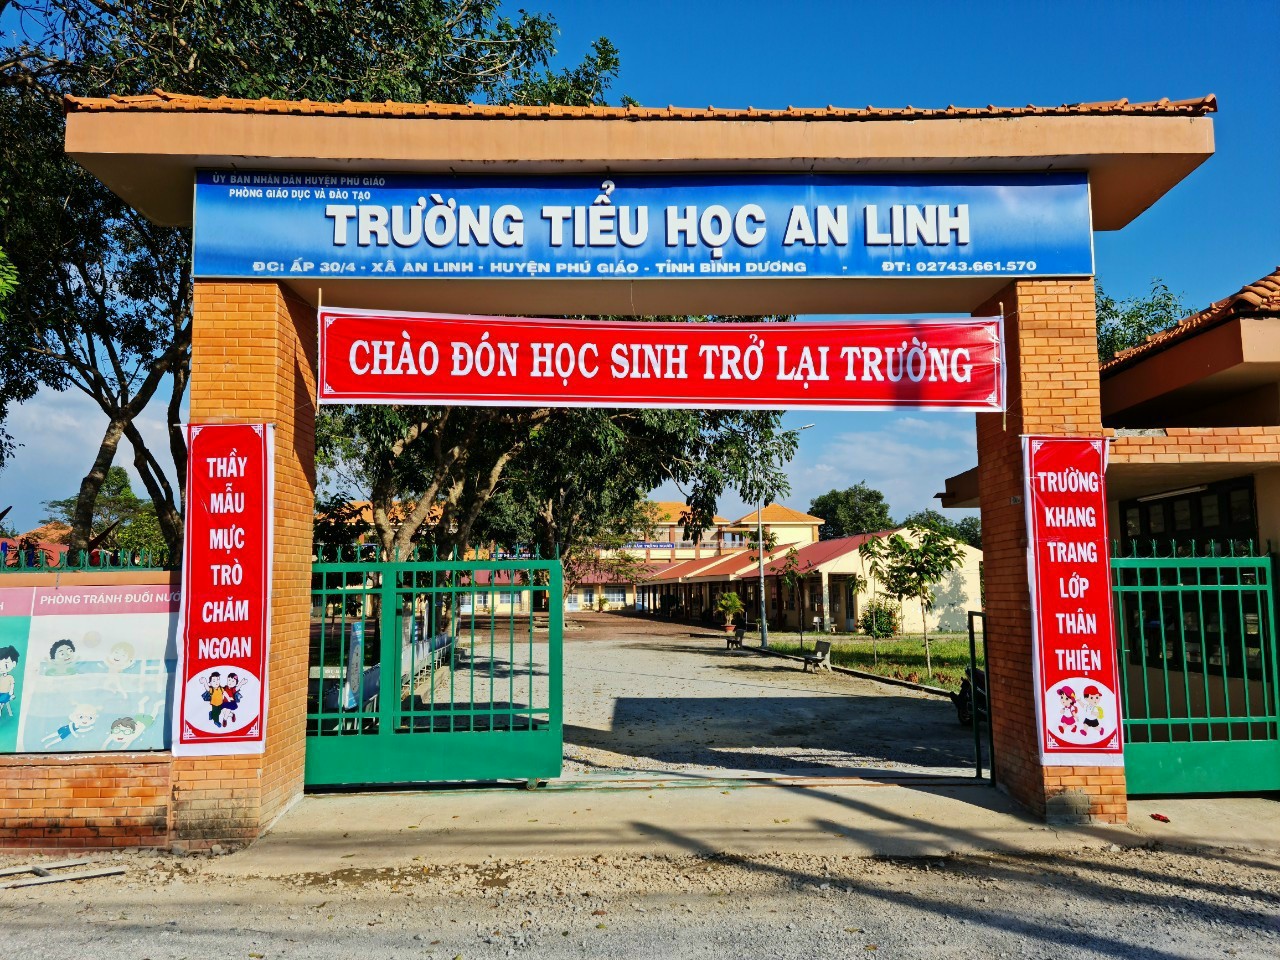 Cong truong